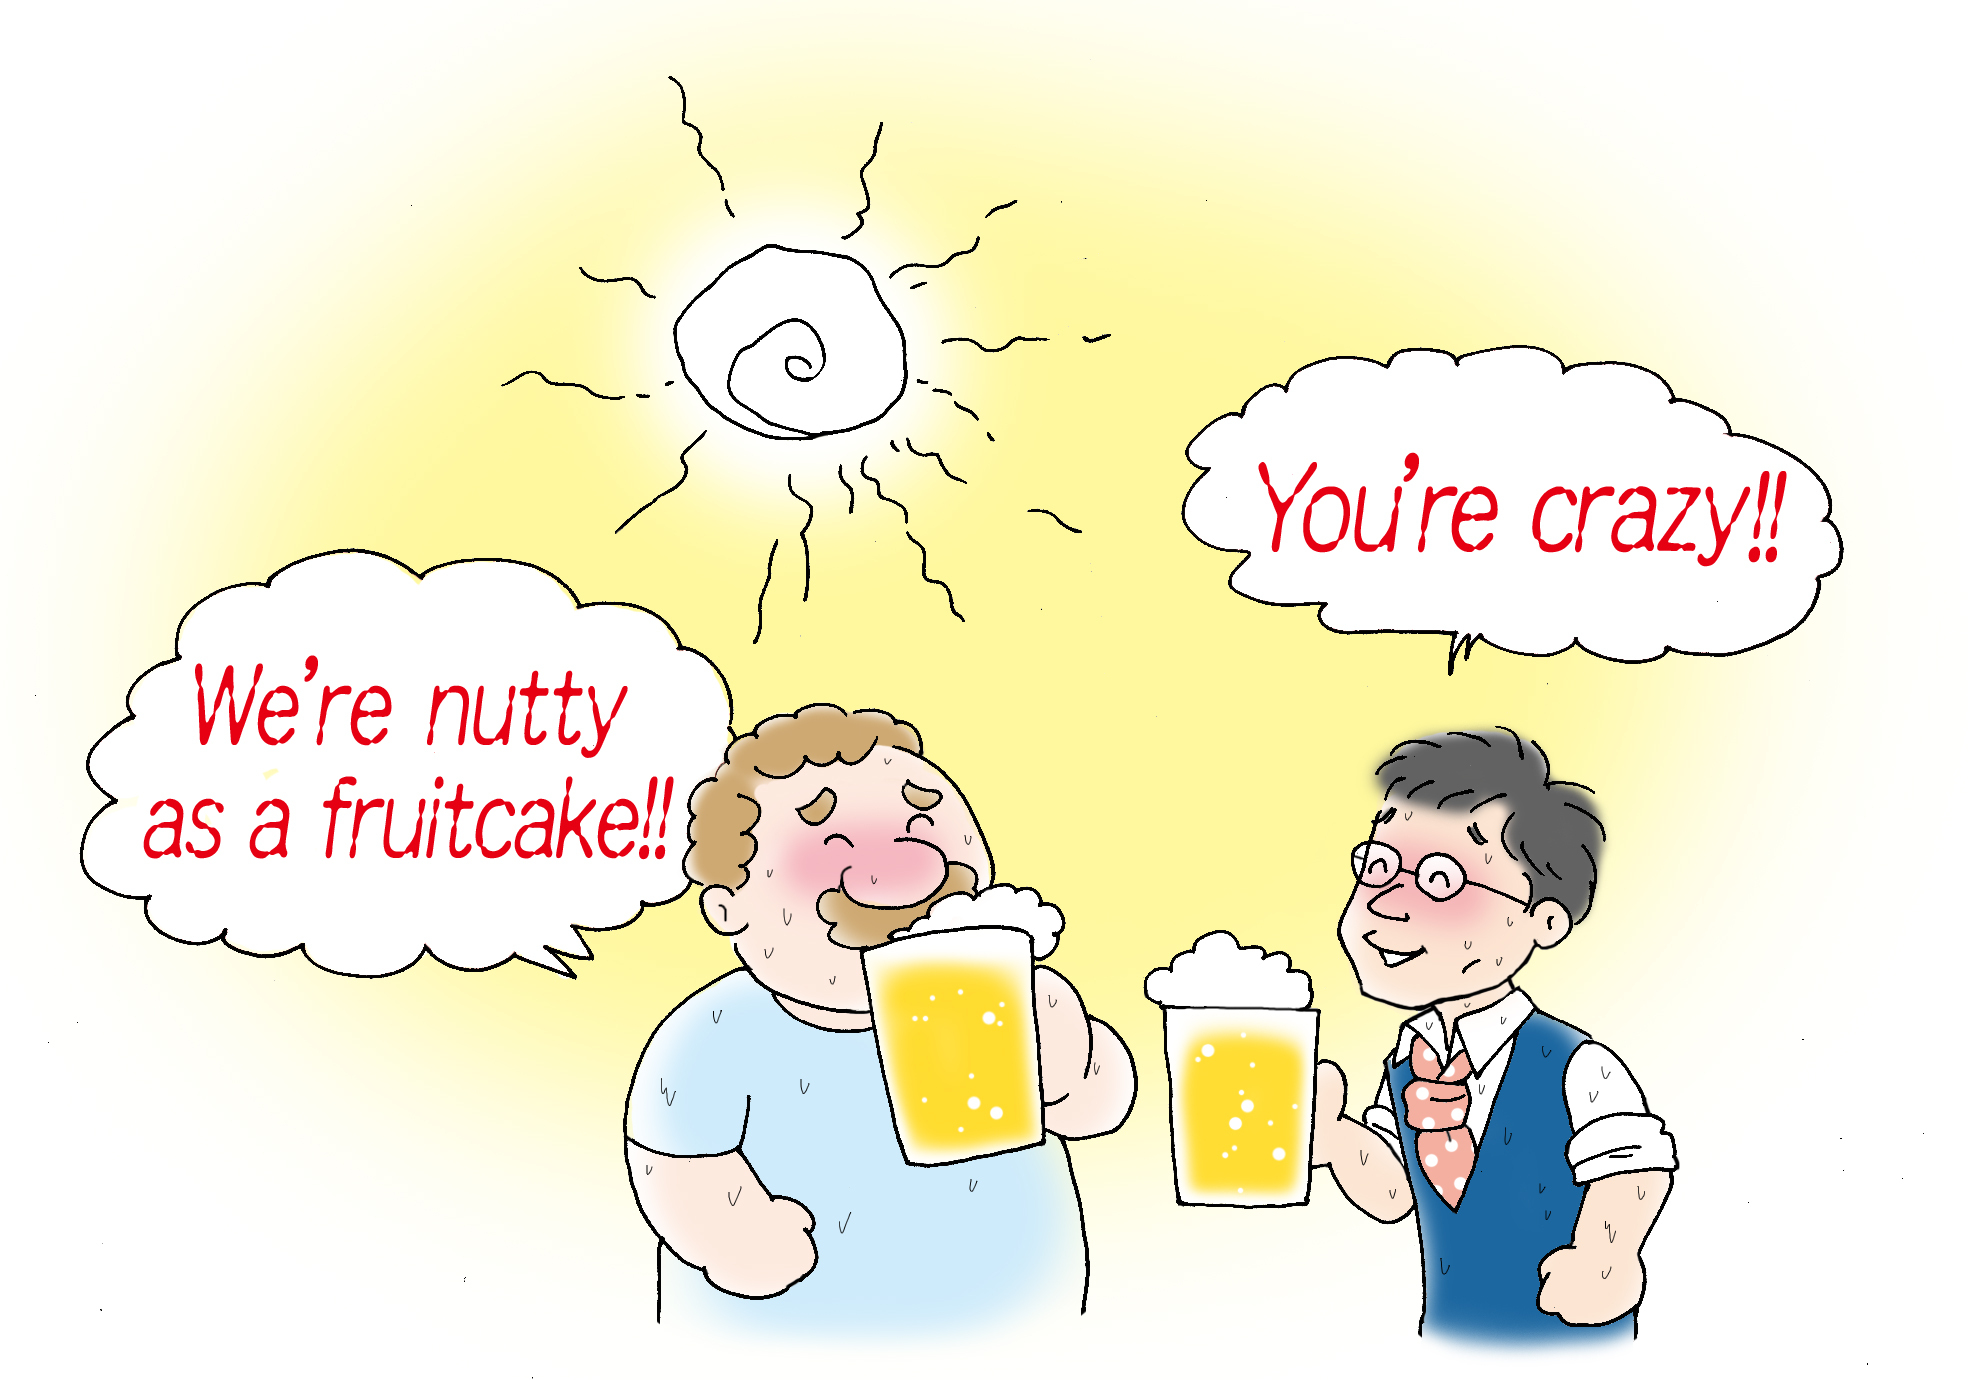 炎天下でビールを飲むなんて、悪フザケがすぎます。We're nutty as a fruitcake! は、おれらイカれてる　って意味です。カジュアルな表現なので、親しい間柄だけで使ってください。